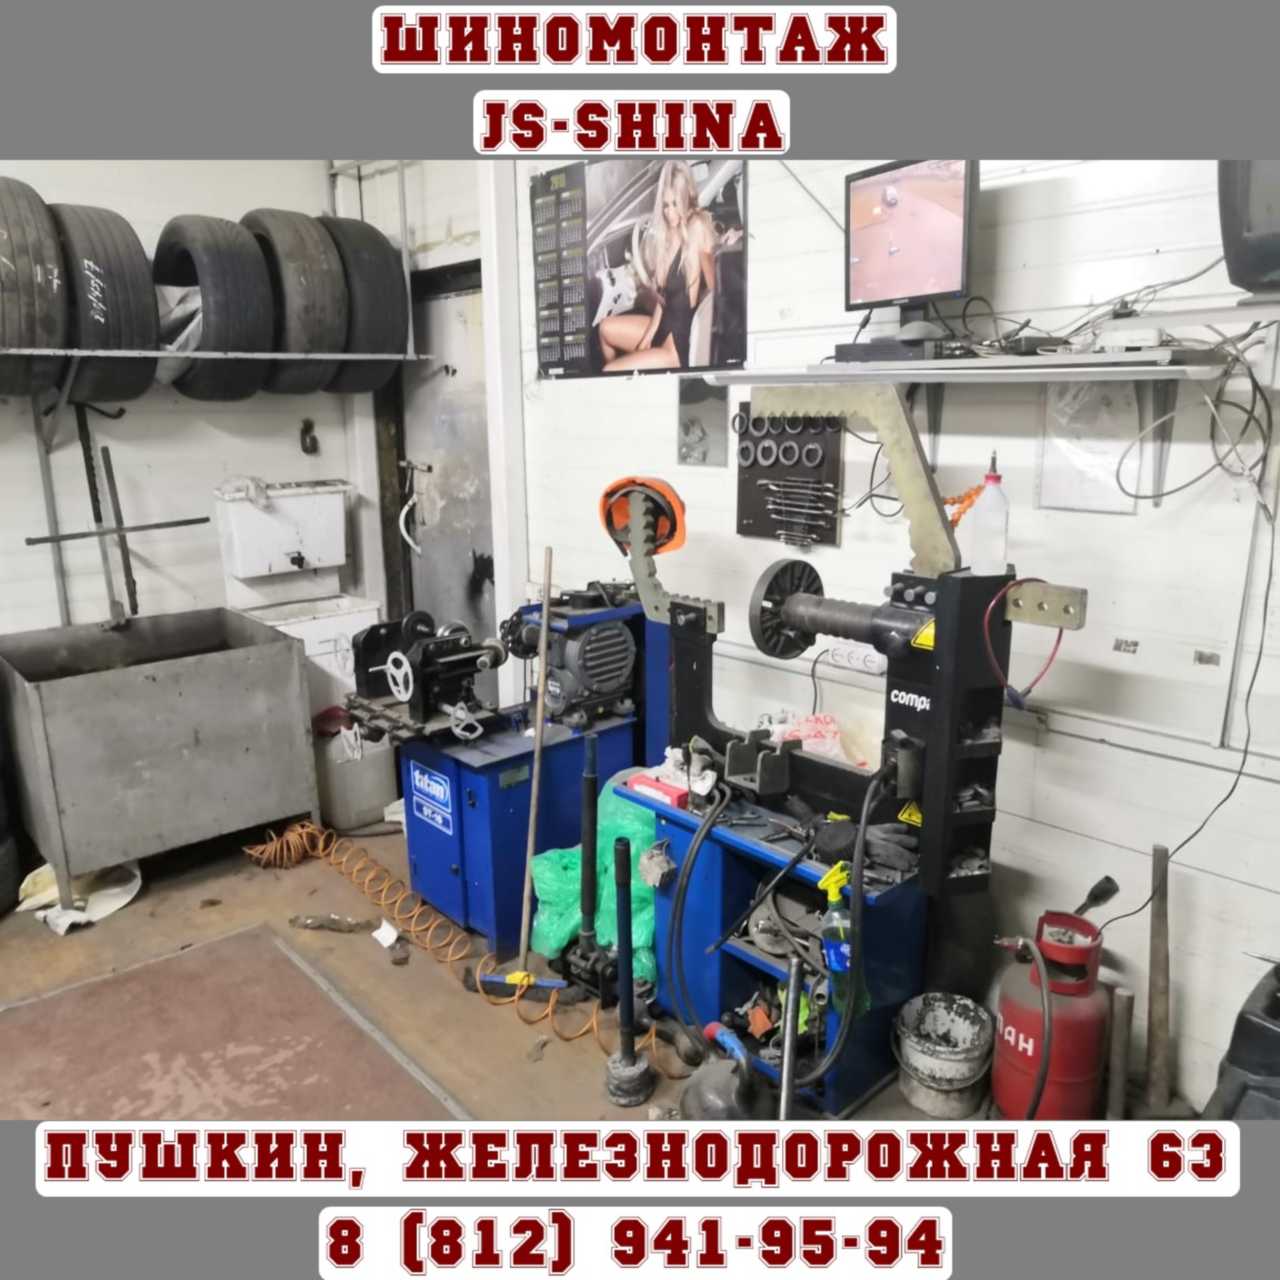 Шиномонтаж 24 часа в Пушкине, ул. Железнодорожная, д. 65 ремонт дисков